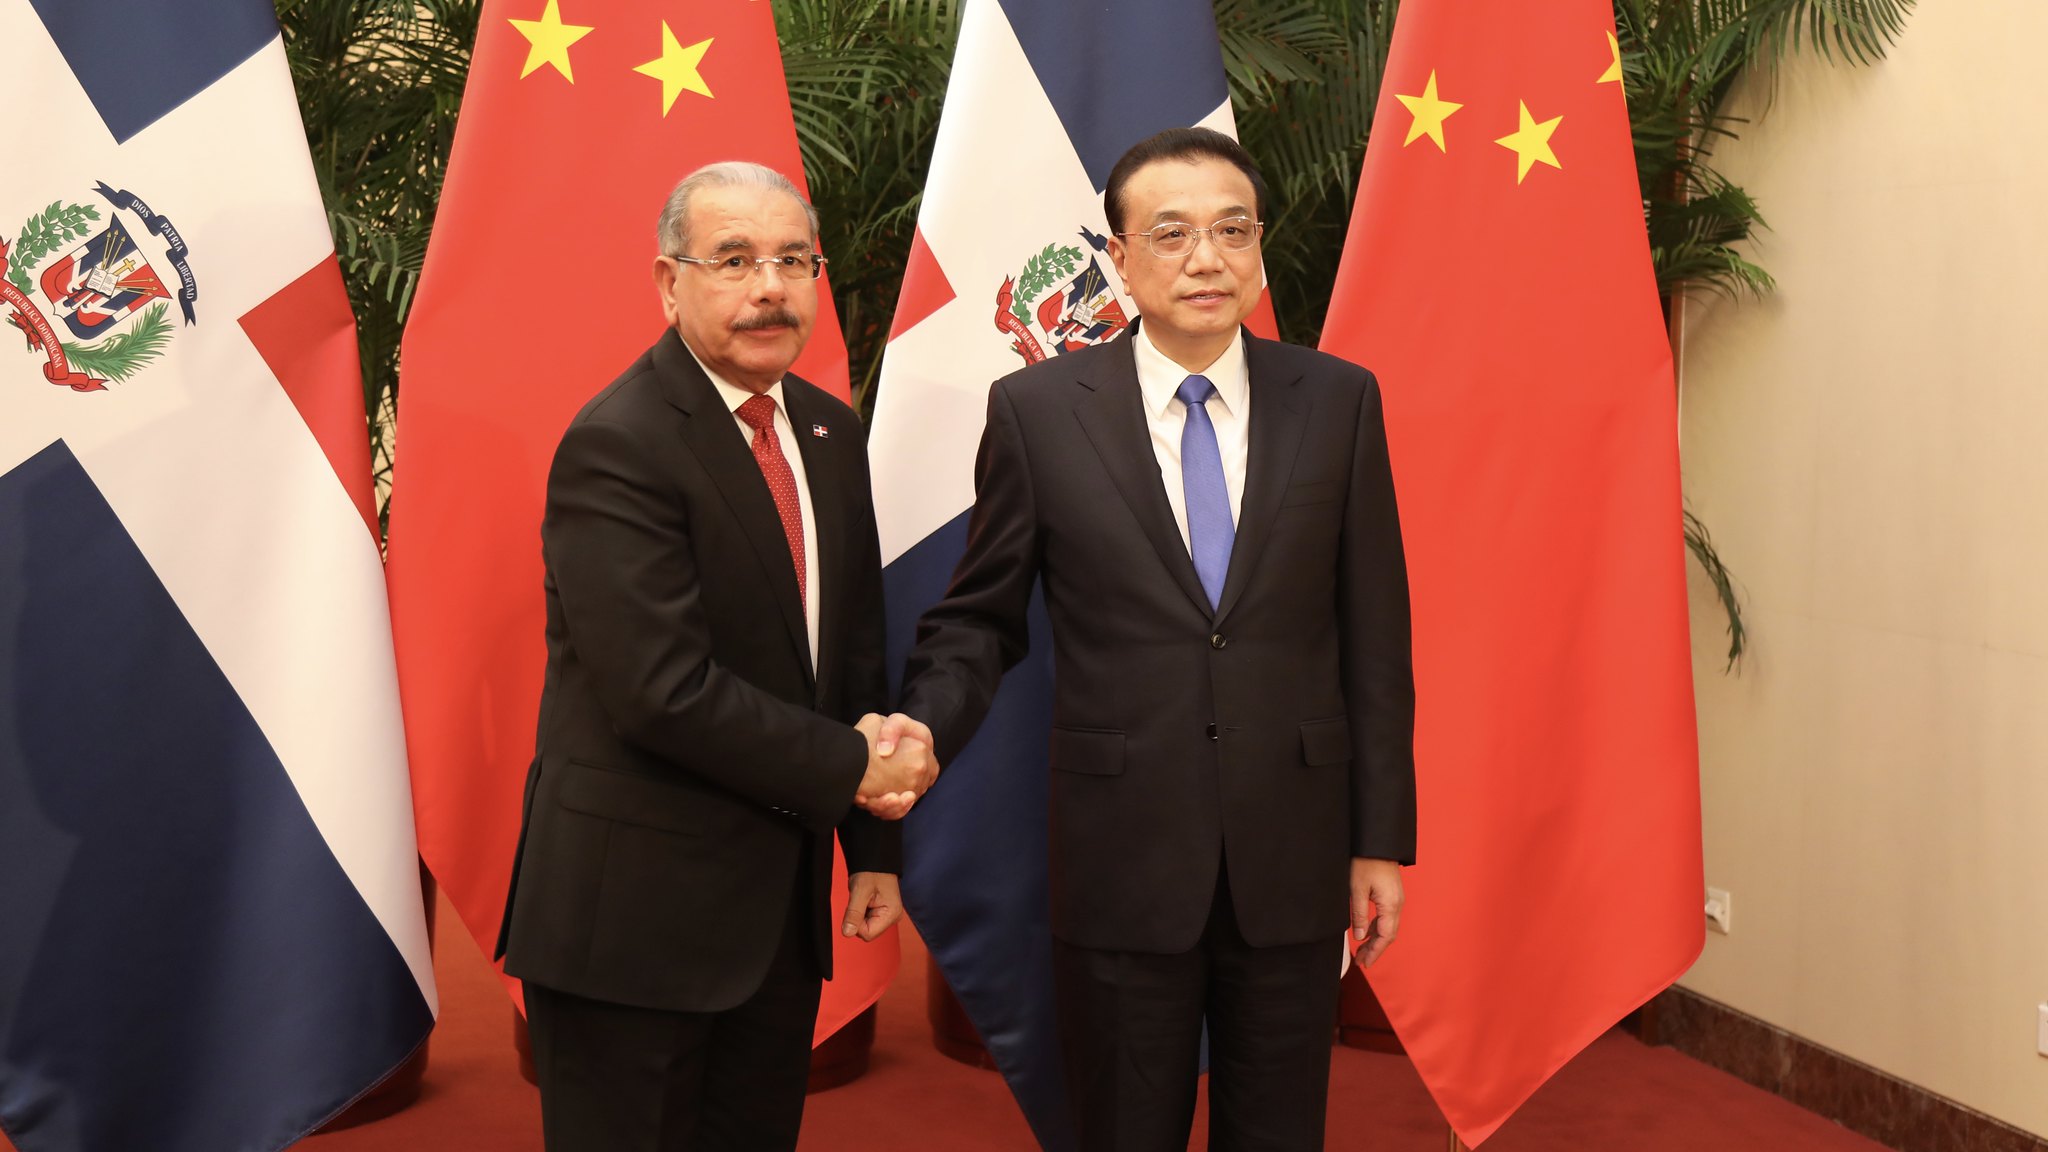 dos hombres vestidos con traje y corbata se dan la mano con banderas de república dominicana y china detrás suyo